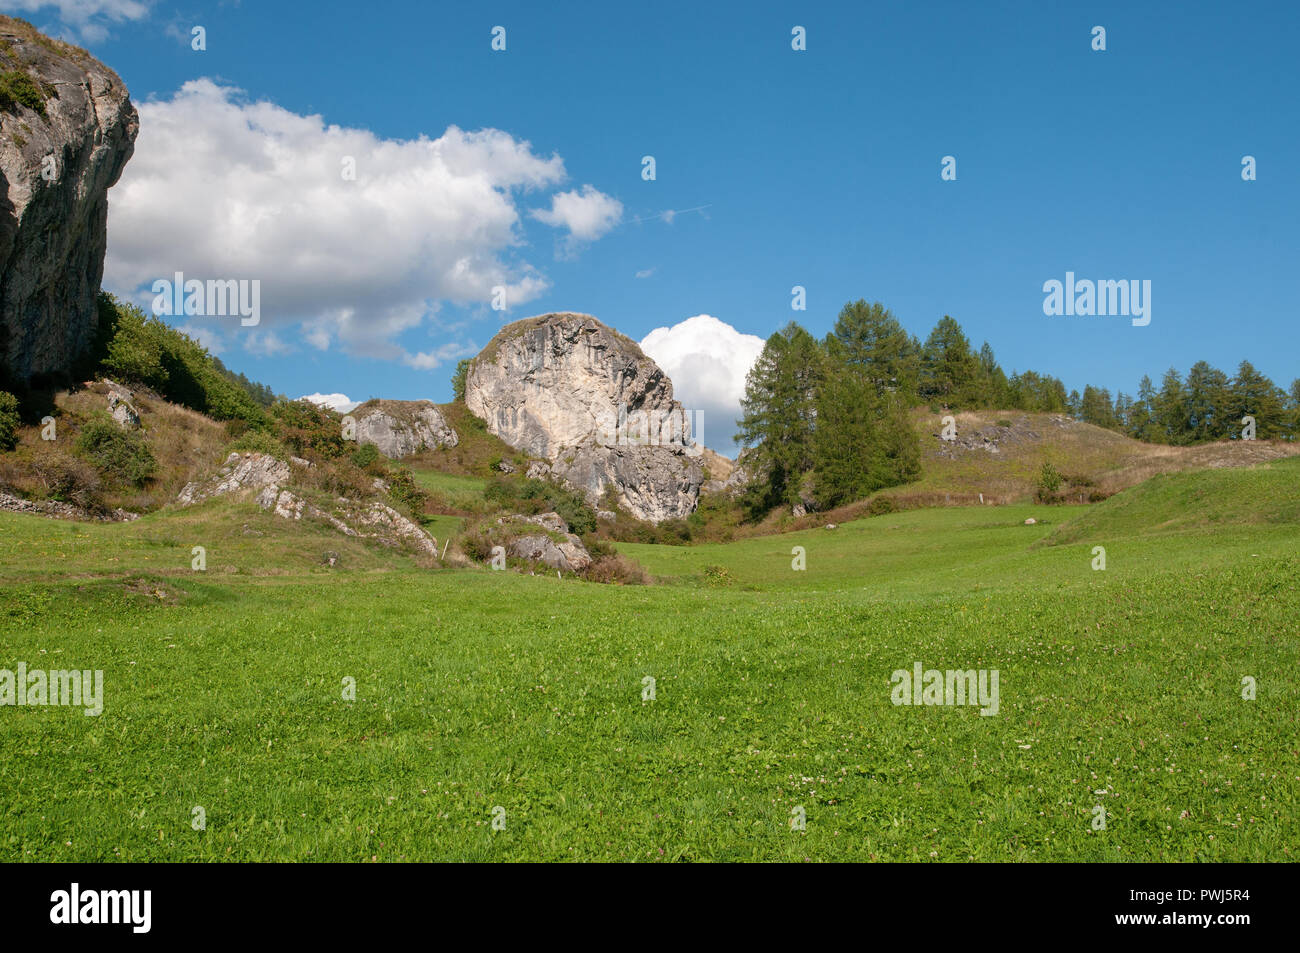 Alpine landscape near Bos-Cha, municipality of Scuol, Engadin, Graubünden, Switzerland Stock Photo